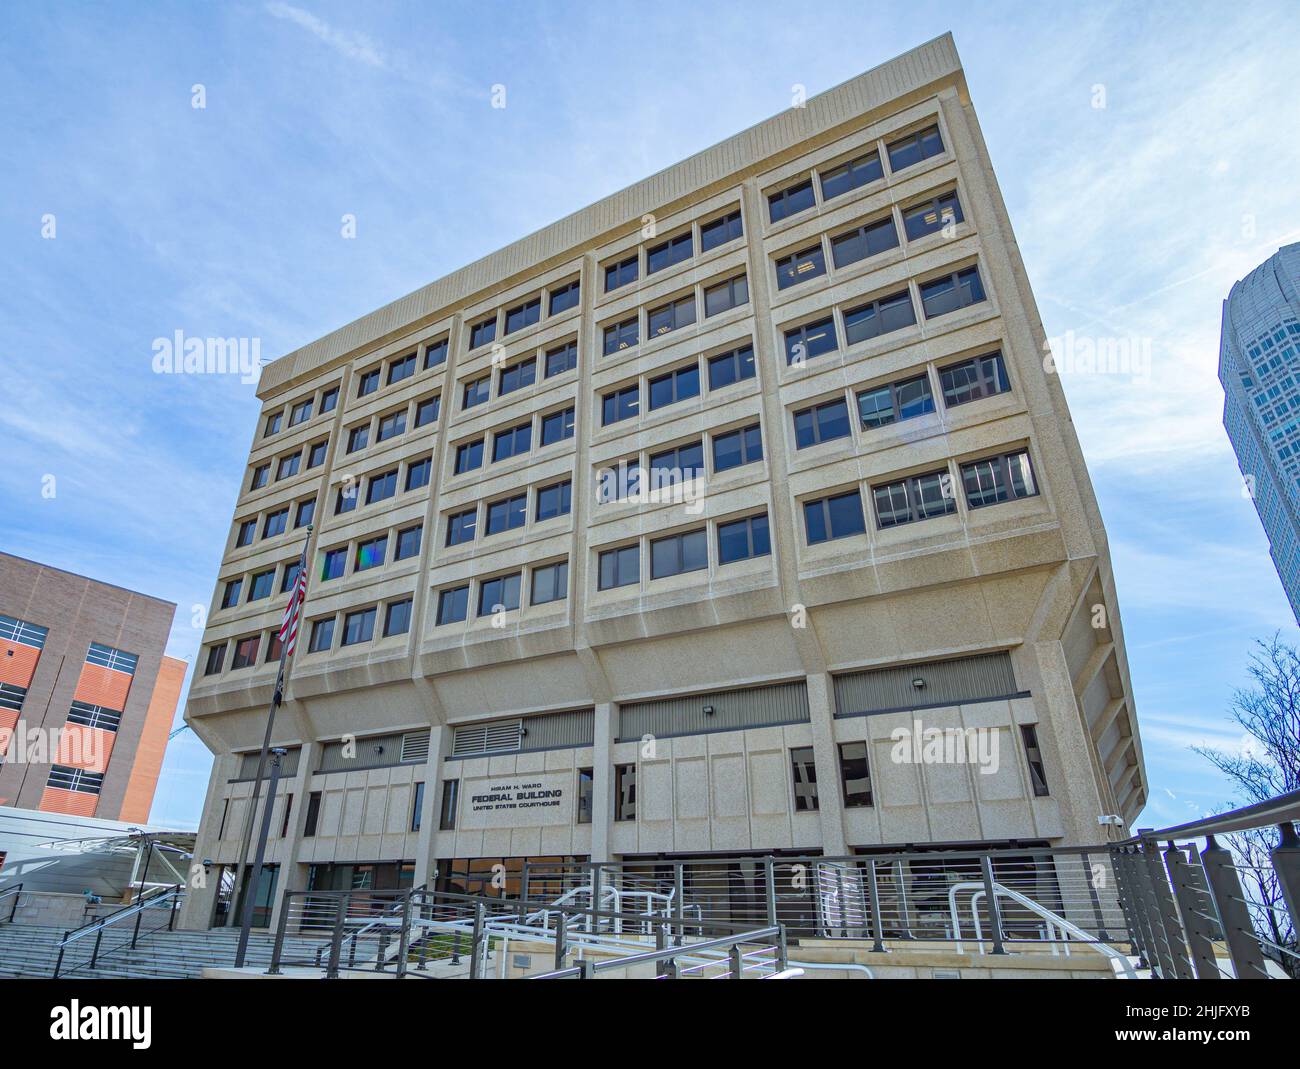 L'edificio federale di Winston-Salem getta ombra sulla sua piazza anteriore. Foto Stock